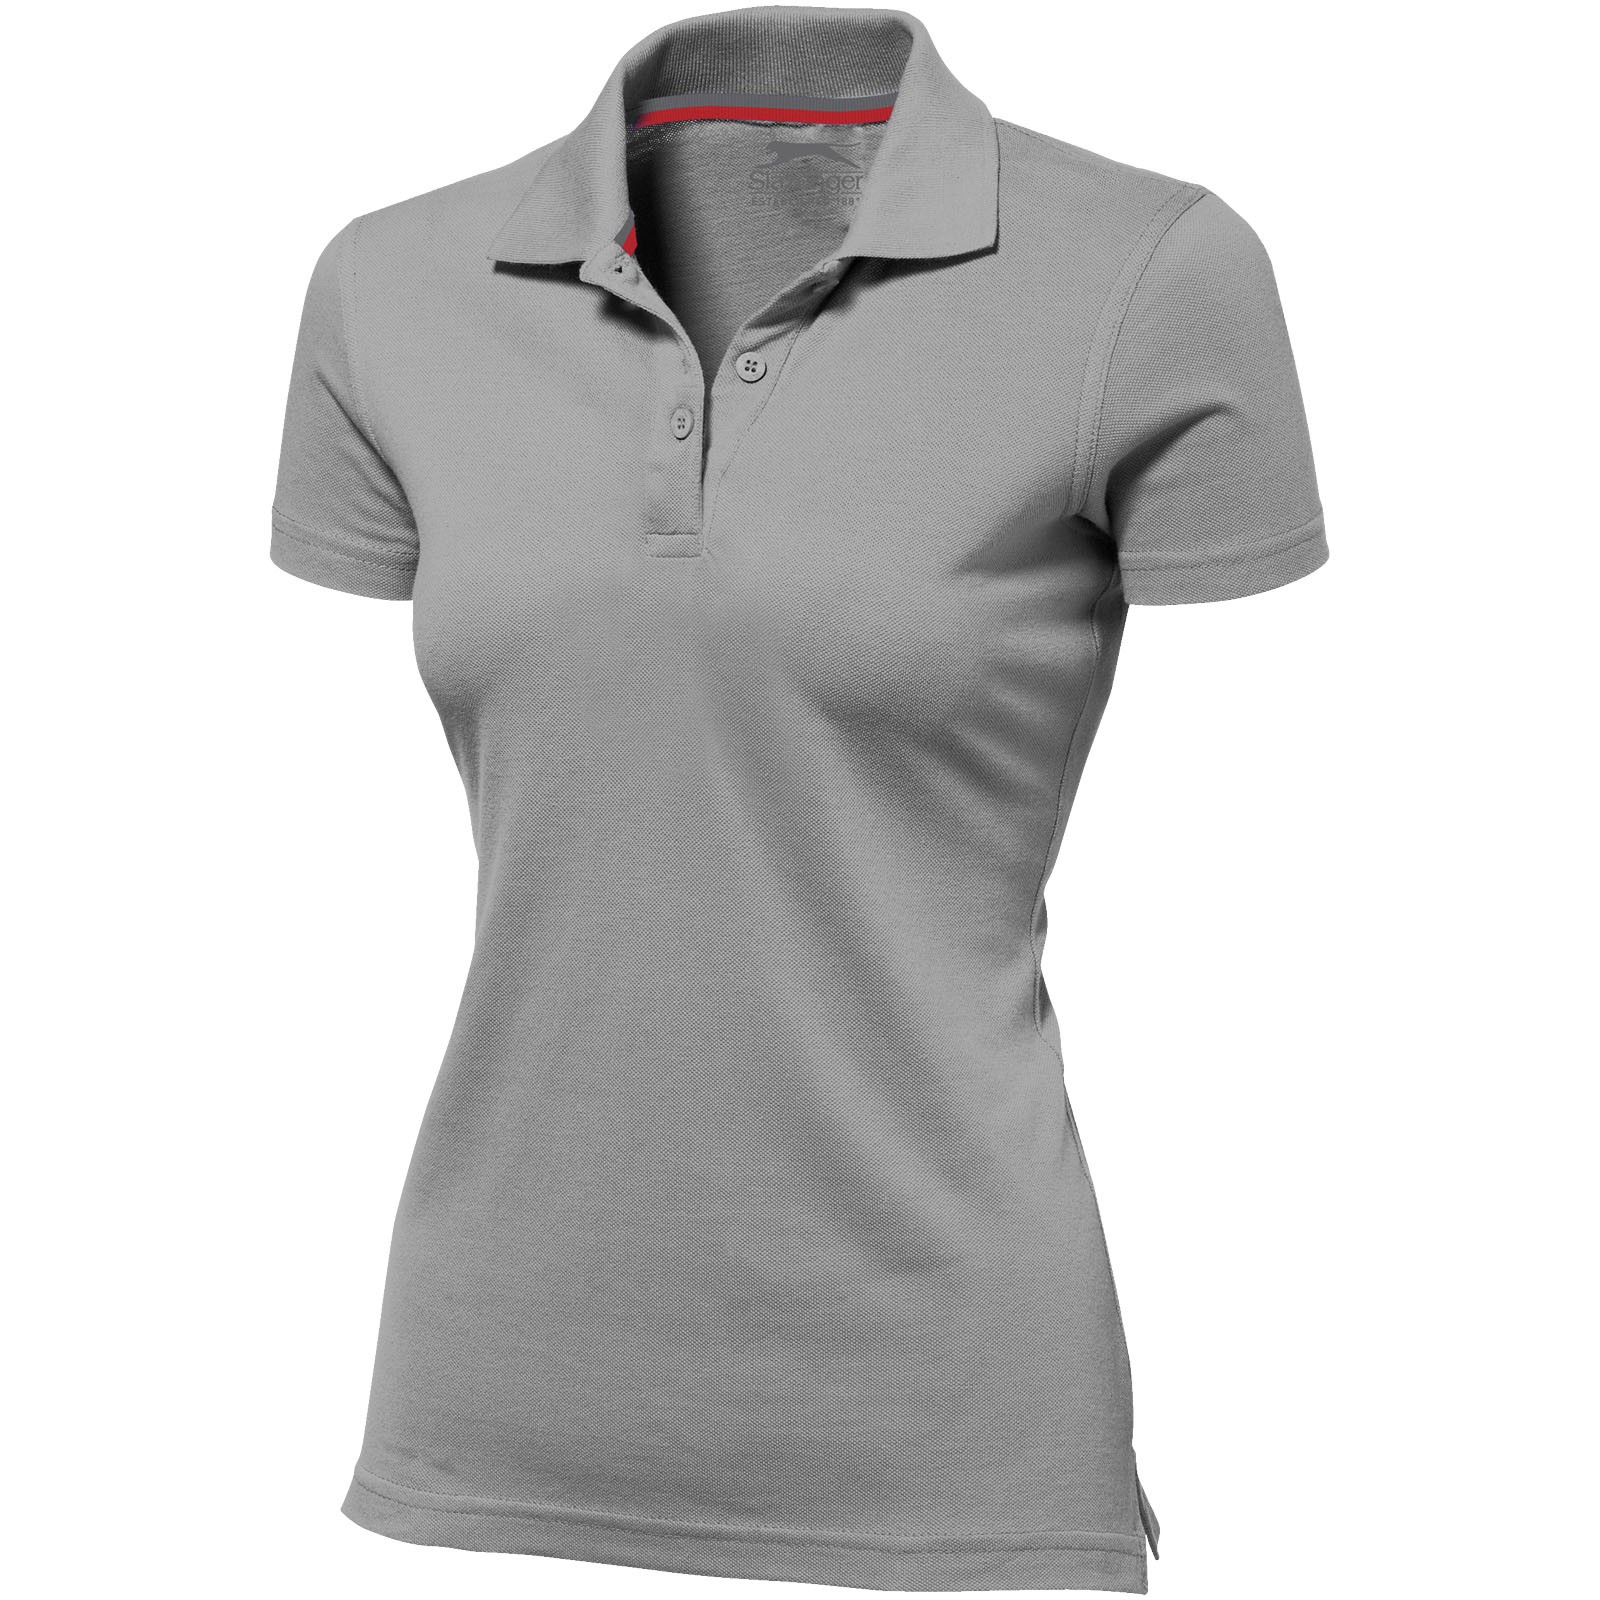 Advantage short sleeve women's polo - Grey / XL